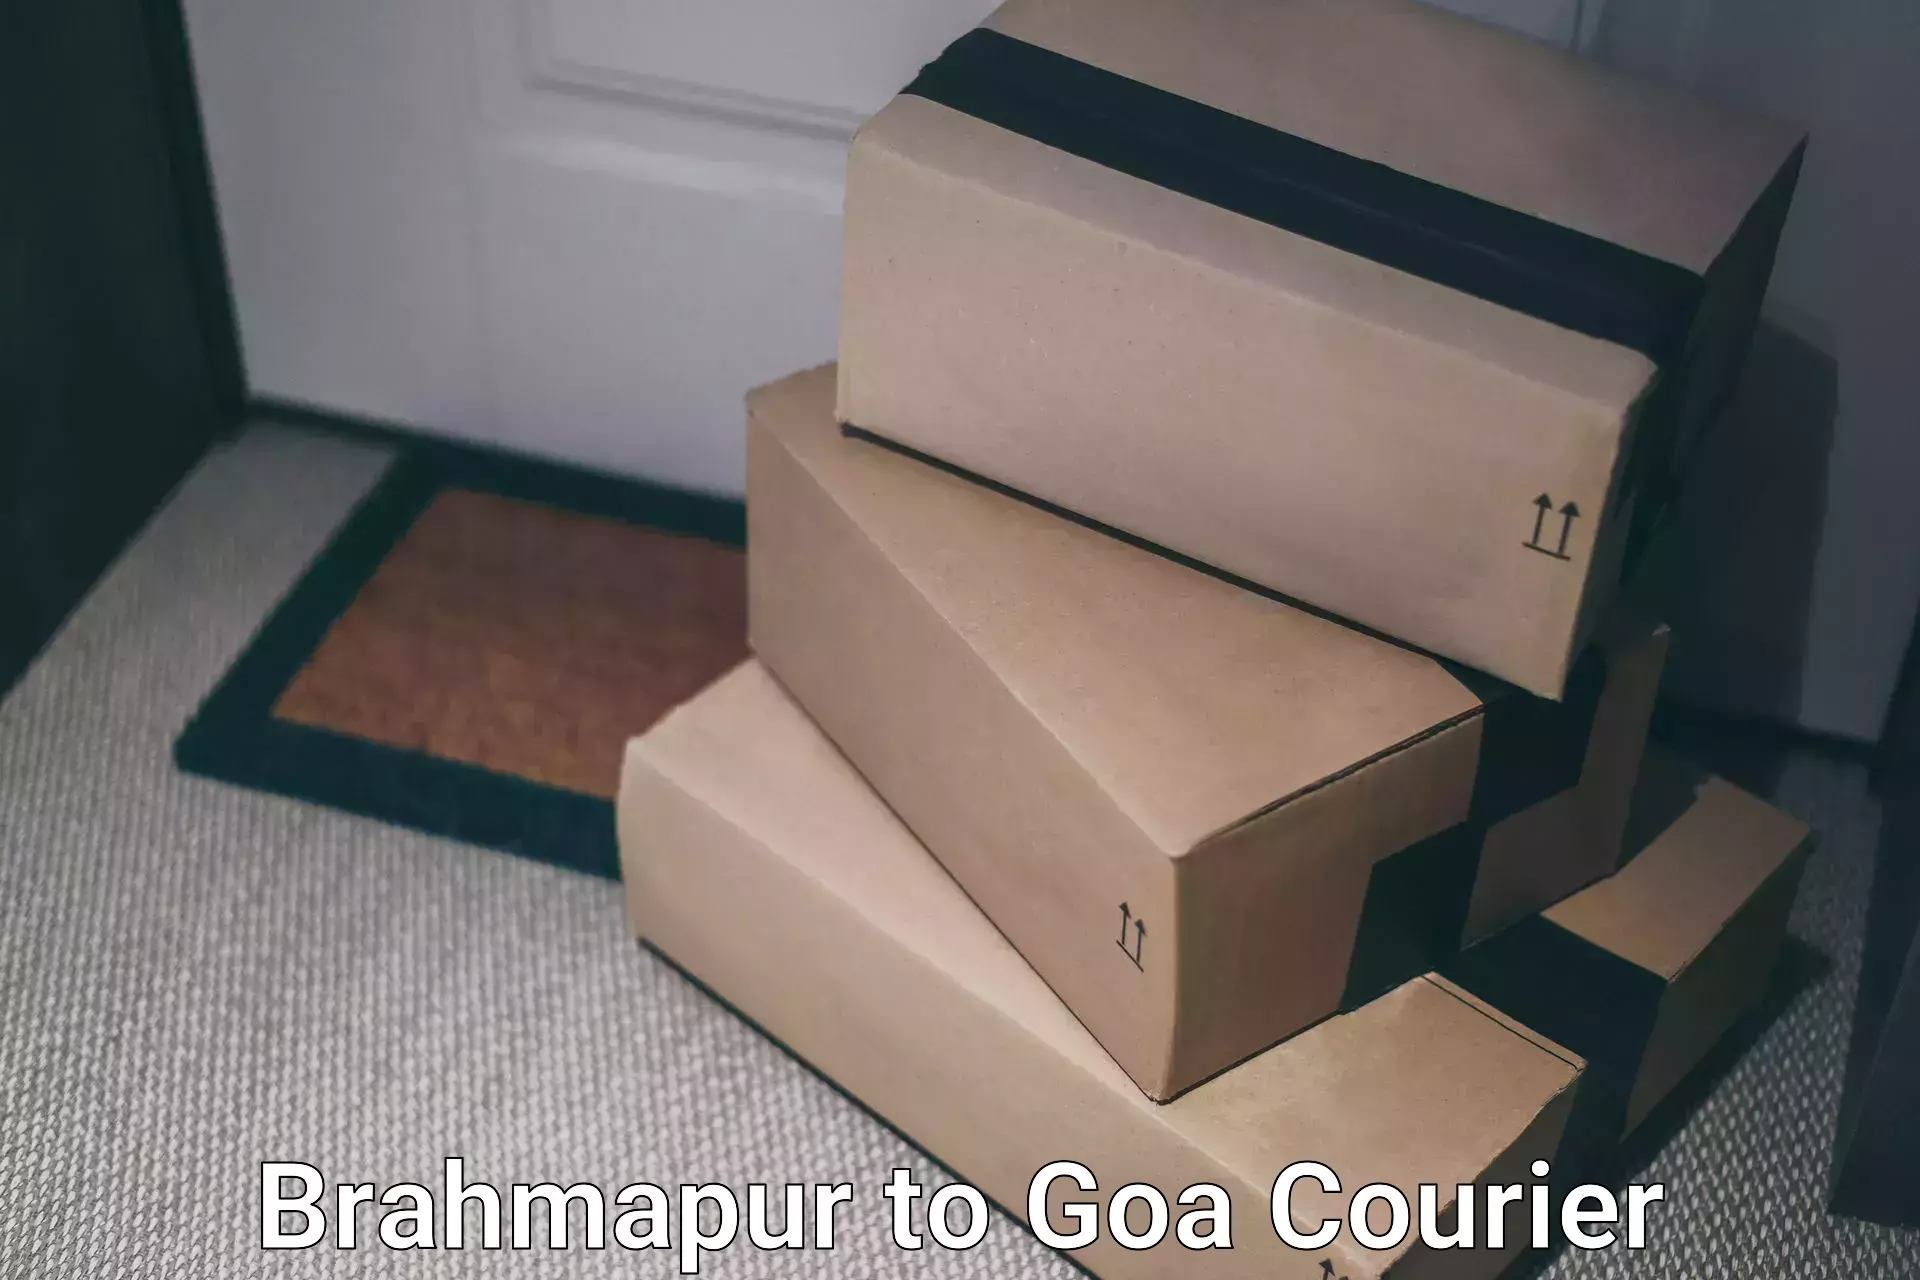 Digital courier platforms Brahmapur to Vasco da Gama